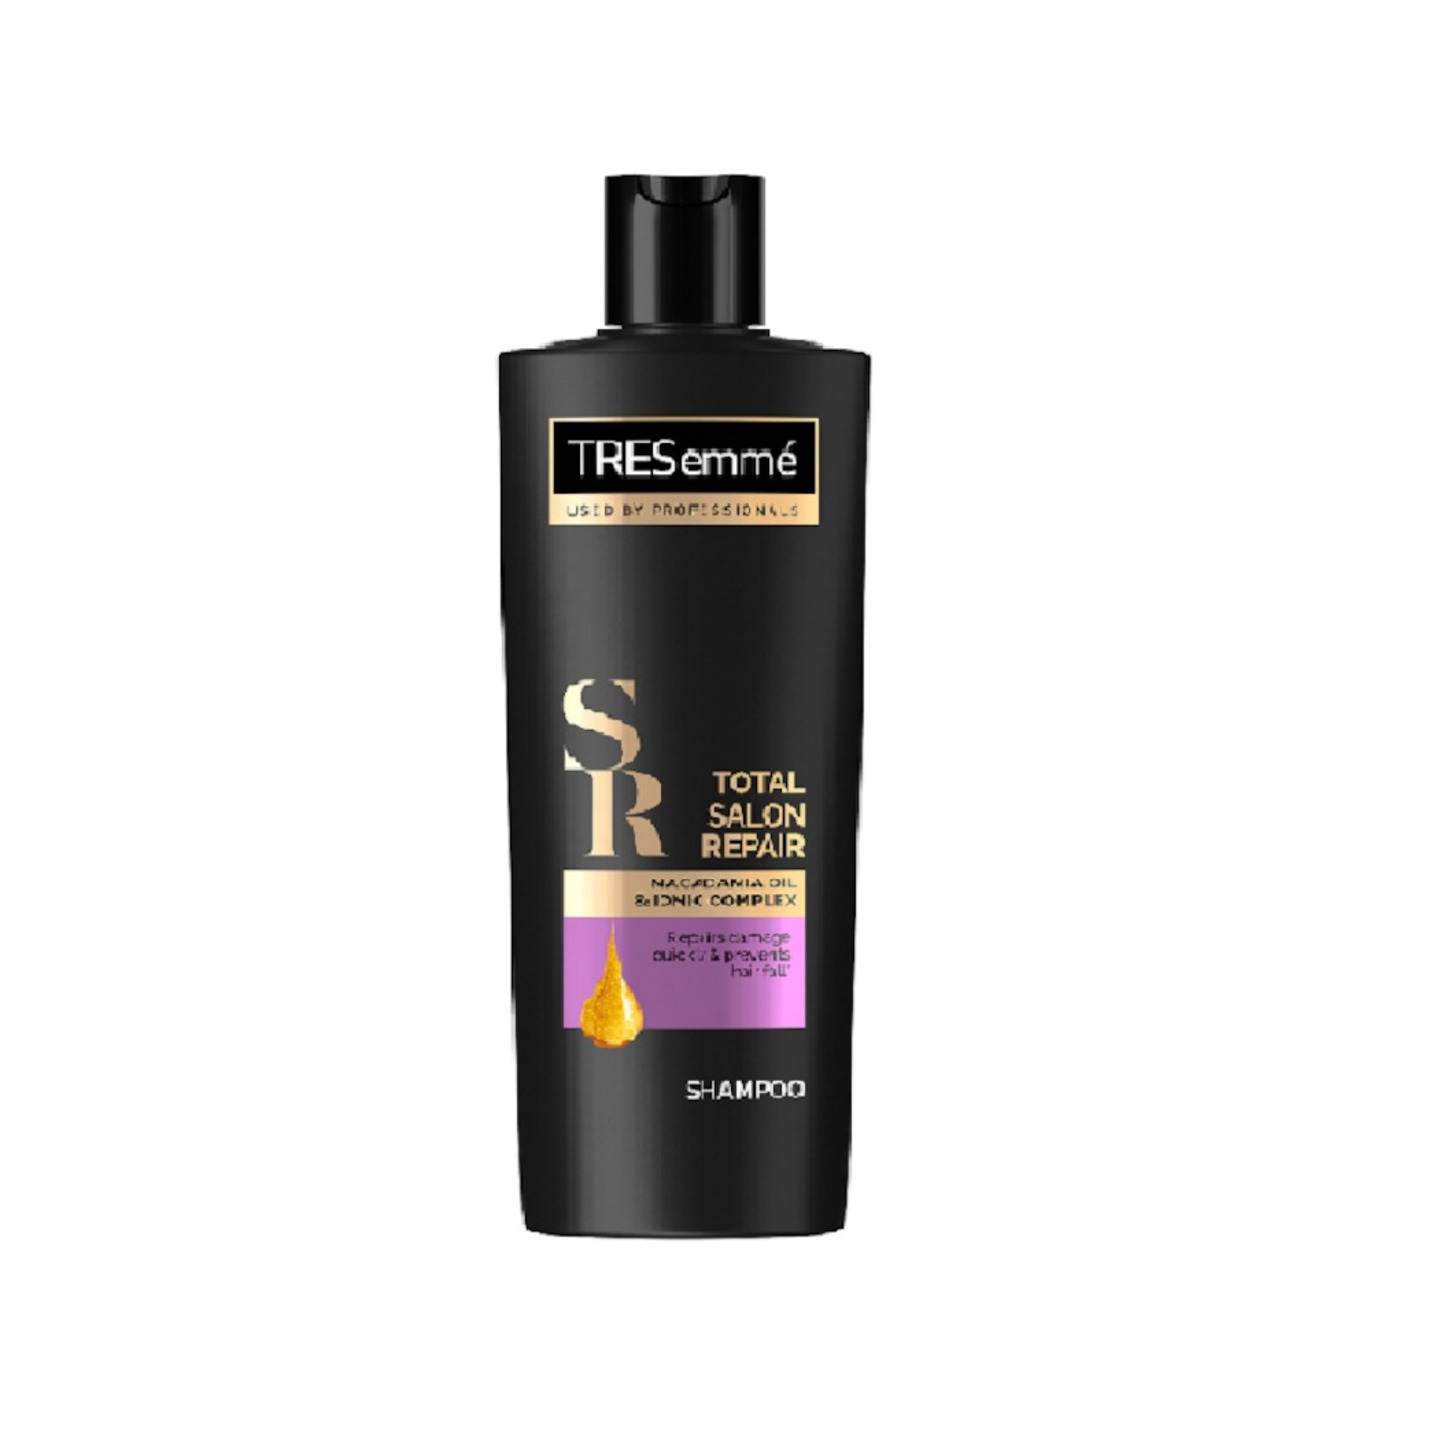 Tersemme Total Salon Repair Shampoo 170ml